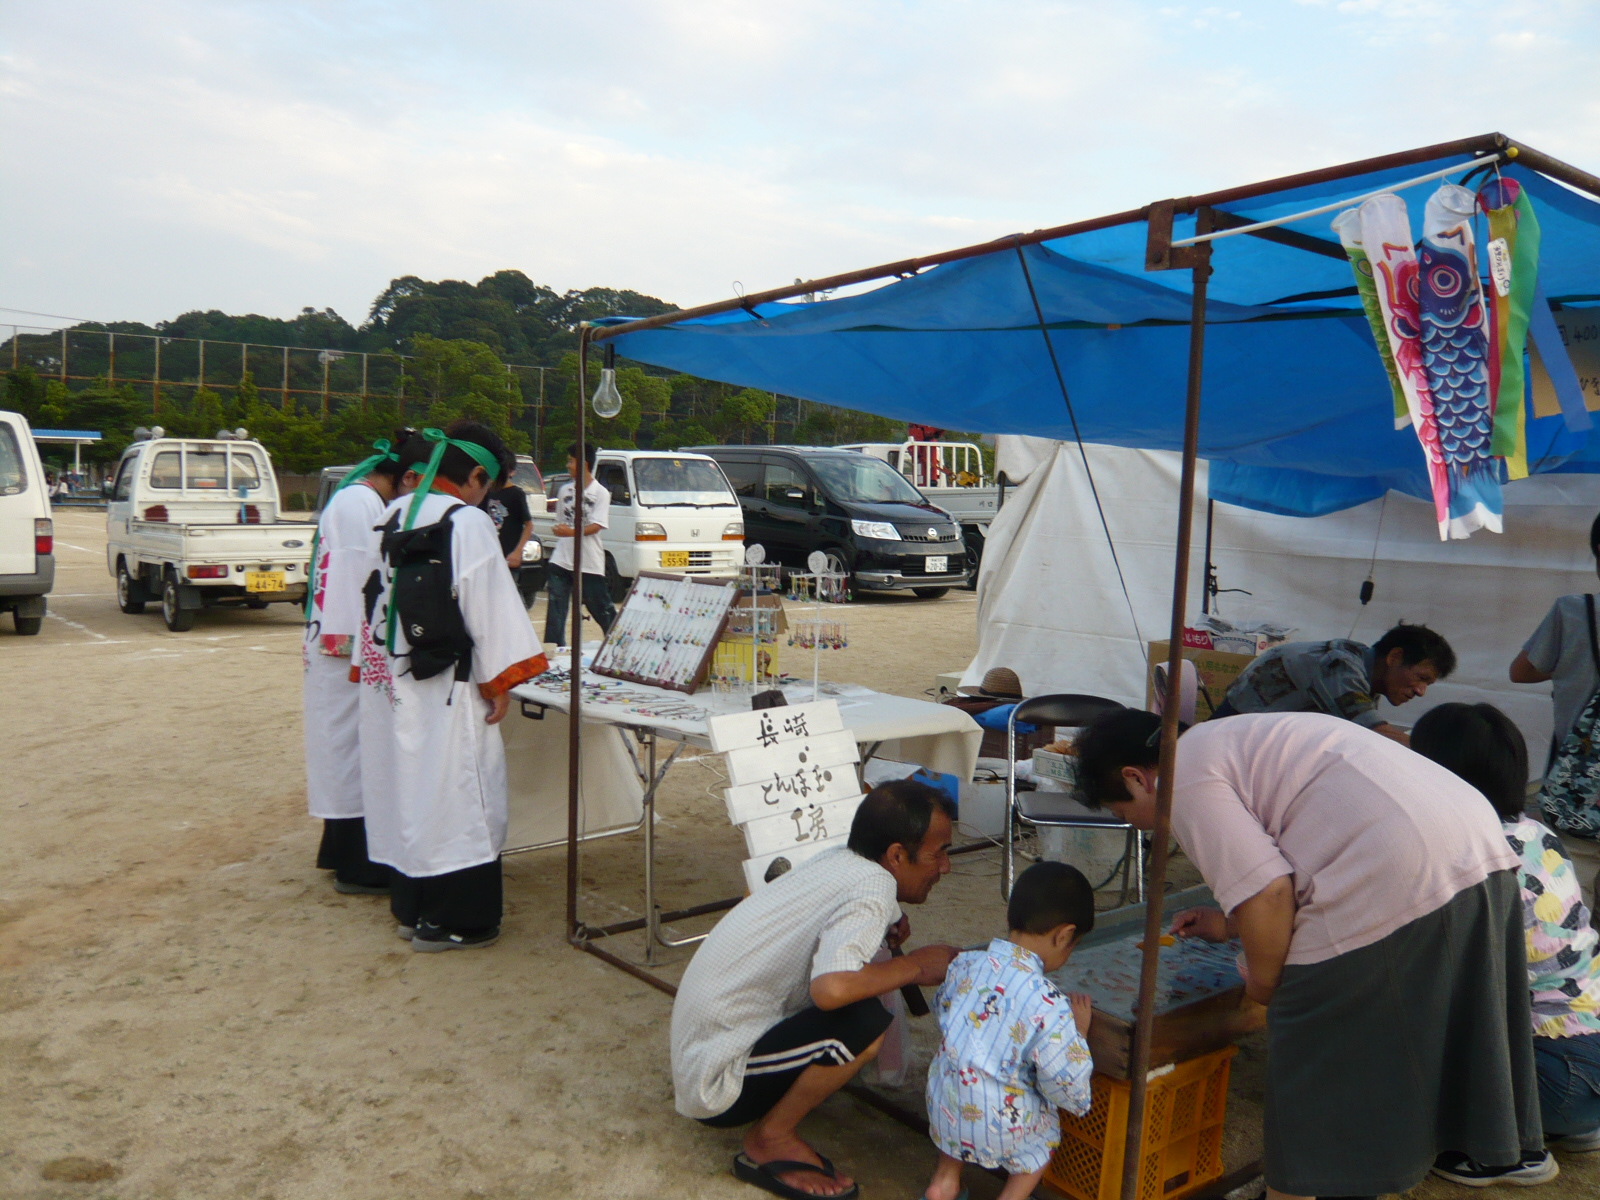 大村浜屋 琴海祭り終了 長崎とんぼ玉工房 ころころ